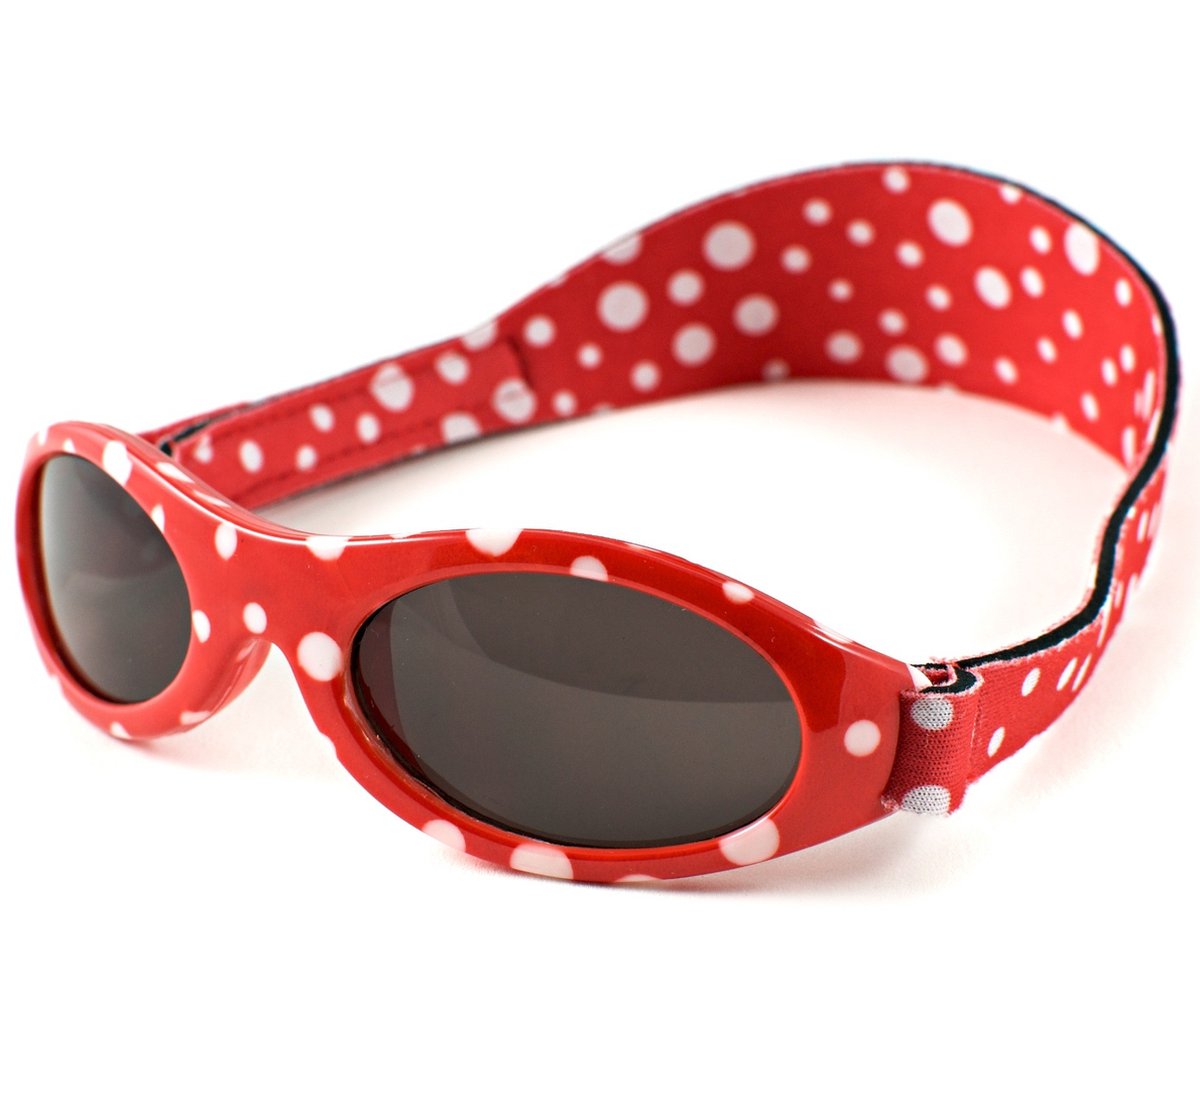 Banz - UV-beschermende zonnebril voor kinderen - Bubzee - Rood gestipt - maat Onesize (2-5yrs)